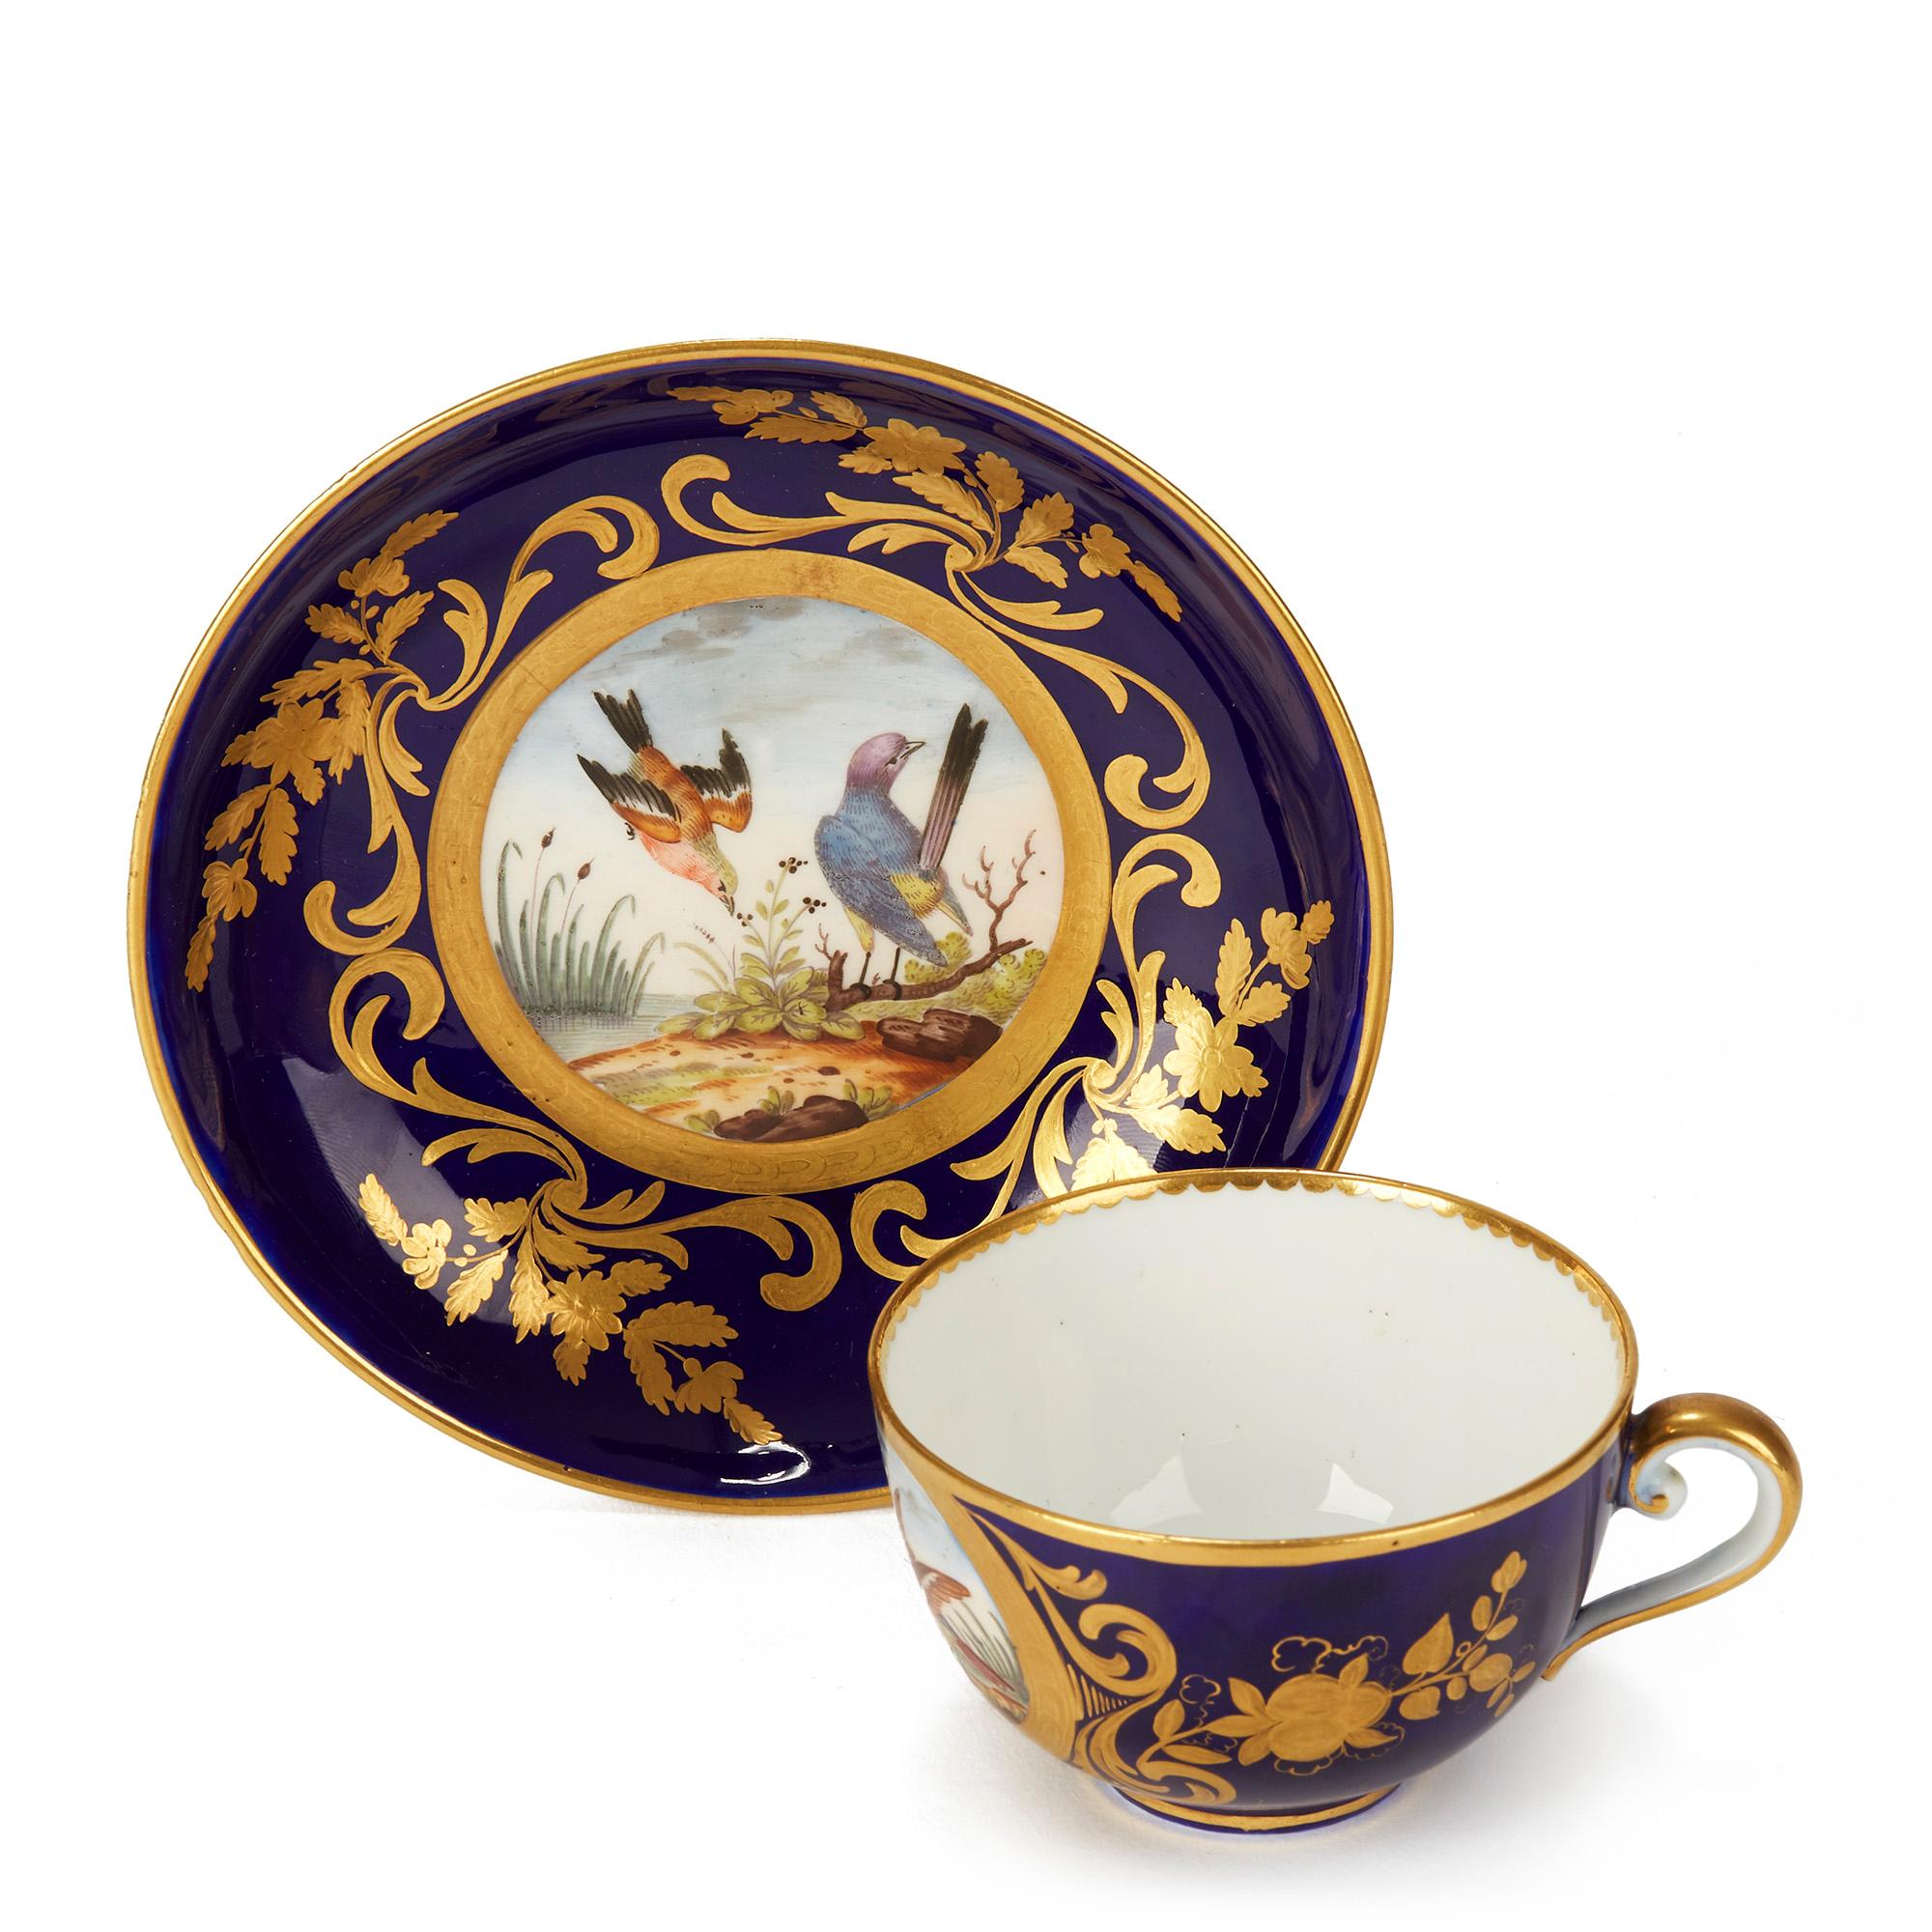 Eine außergewöhnliche und seltene Sèvres Porzellan Kabinett Teetasse und Untertasse jeweils von Hand mit Vögeln in einer Landschaft in farbigen Emaillen gemalt und in einem kobaltblauen umgeben exquisit mit Vergoldung Muster einschließlich scrolling